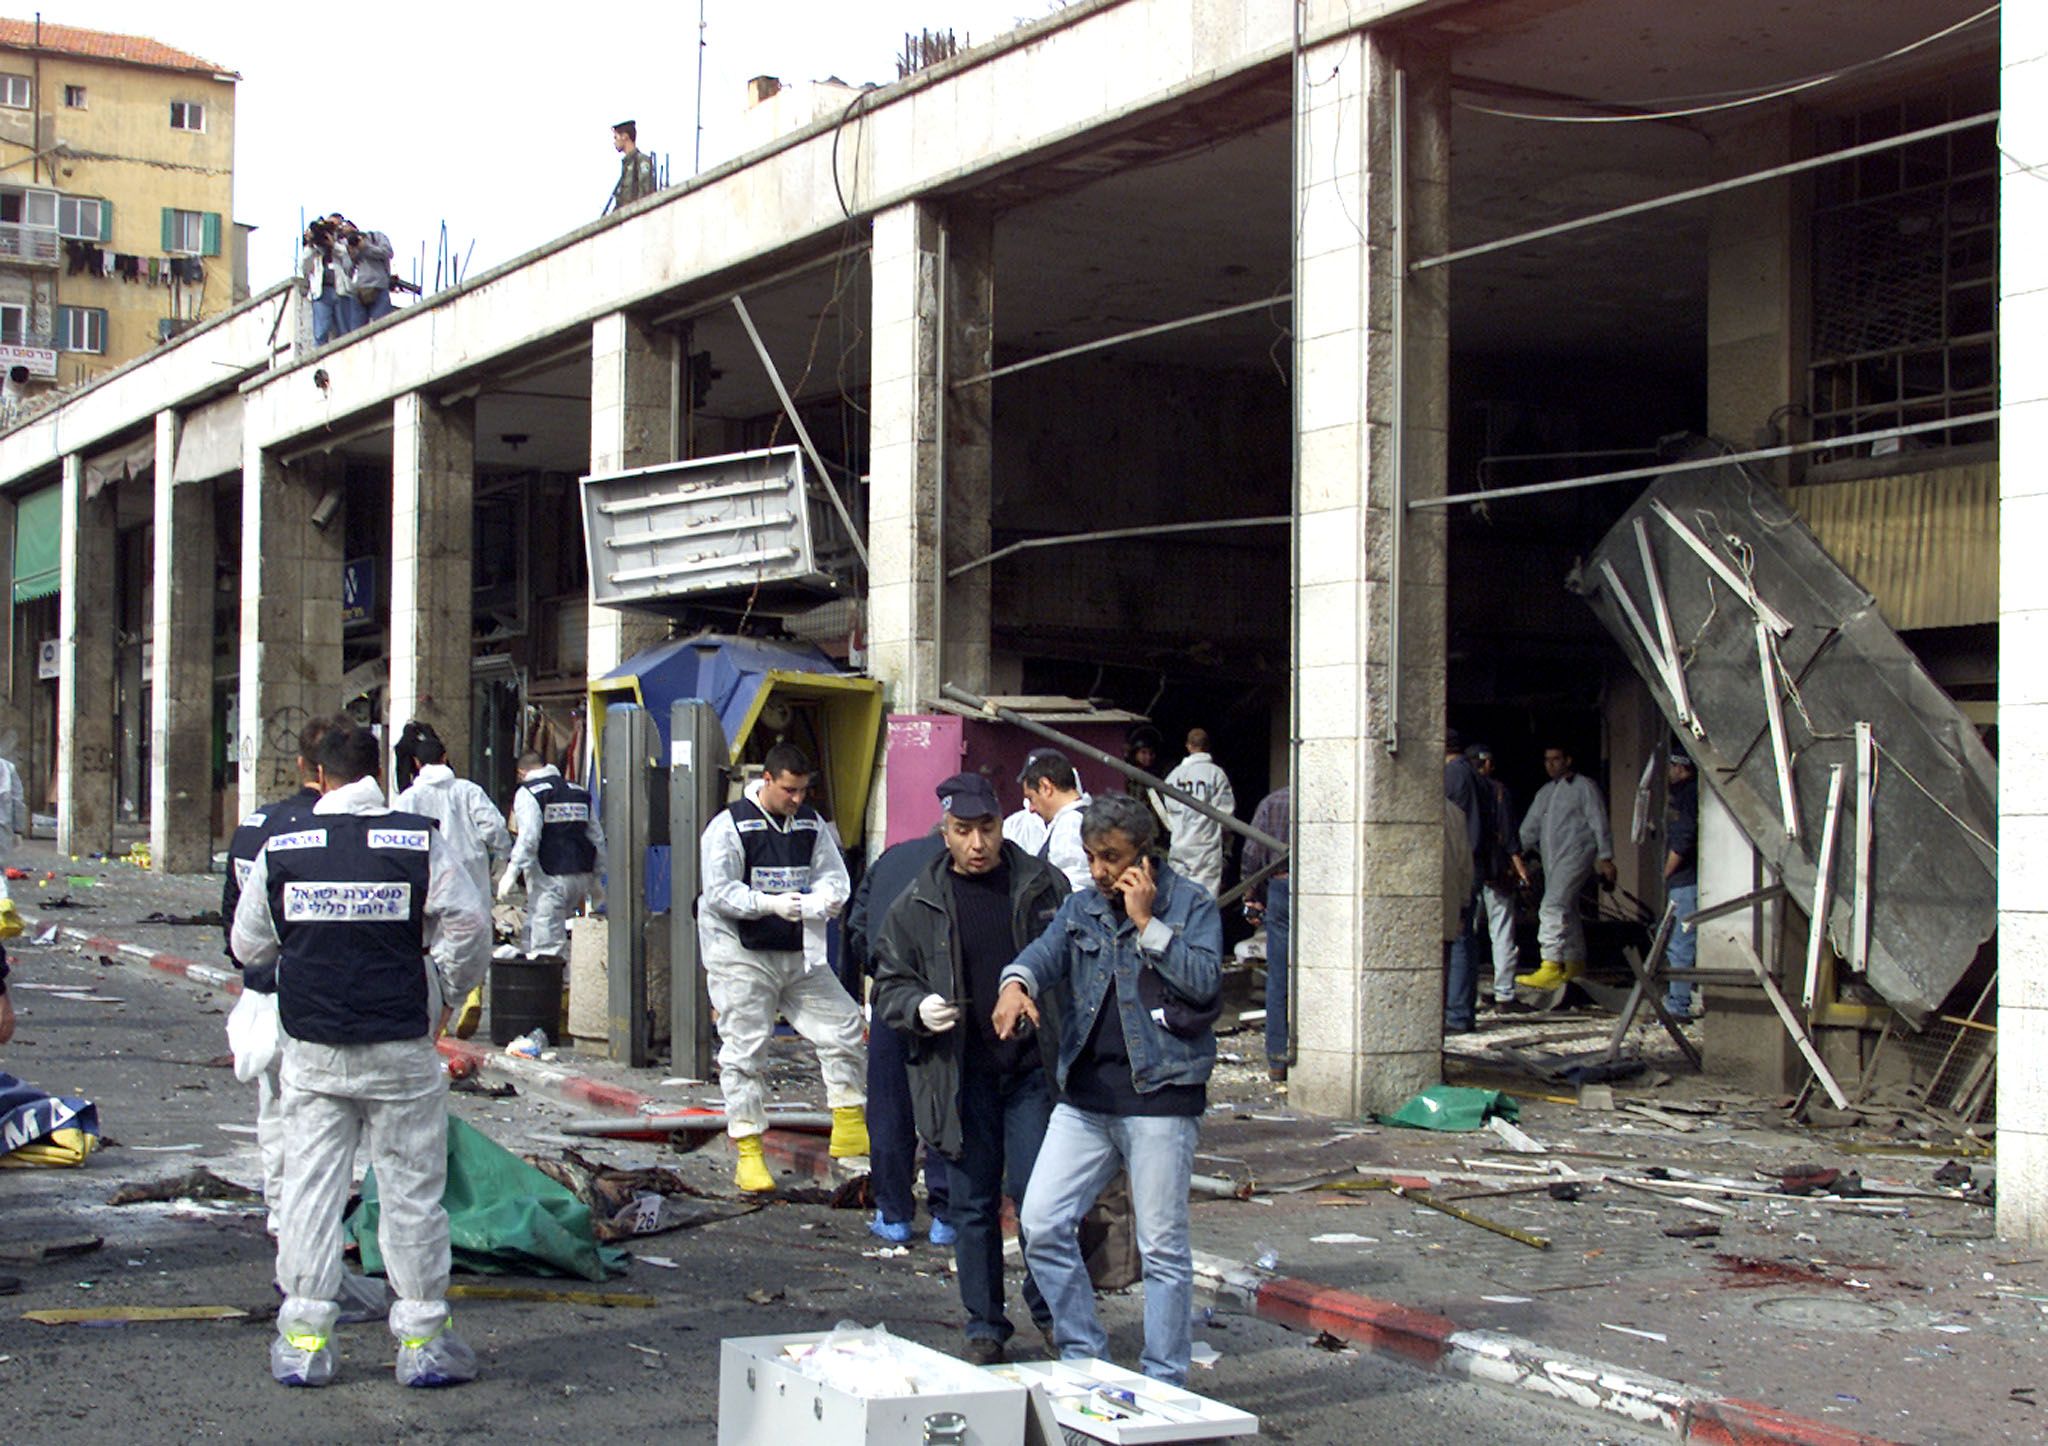 2-23-15 January 2002 Jerusalem bombing